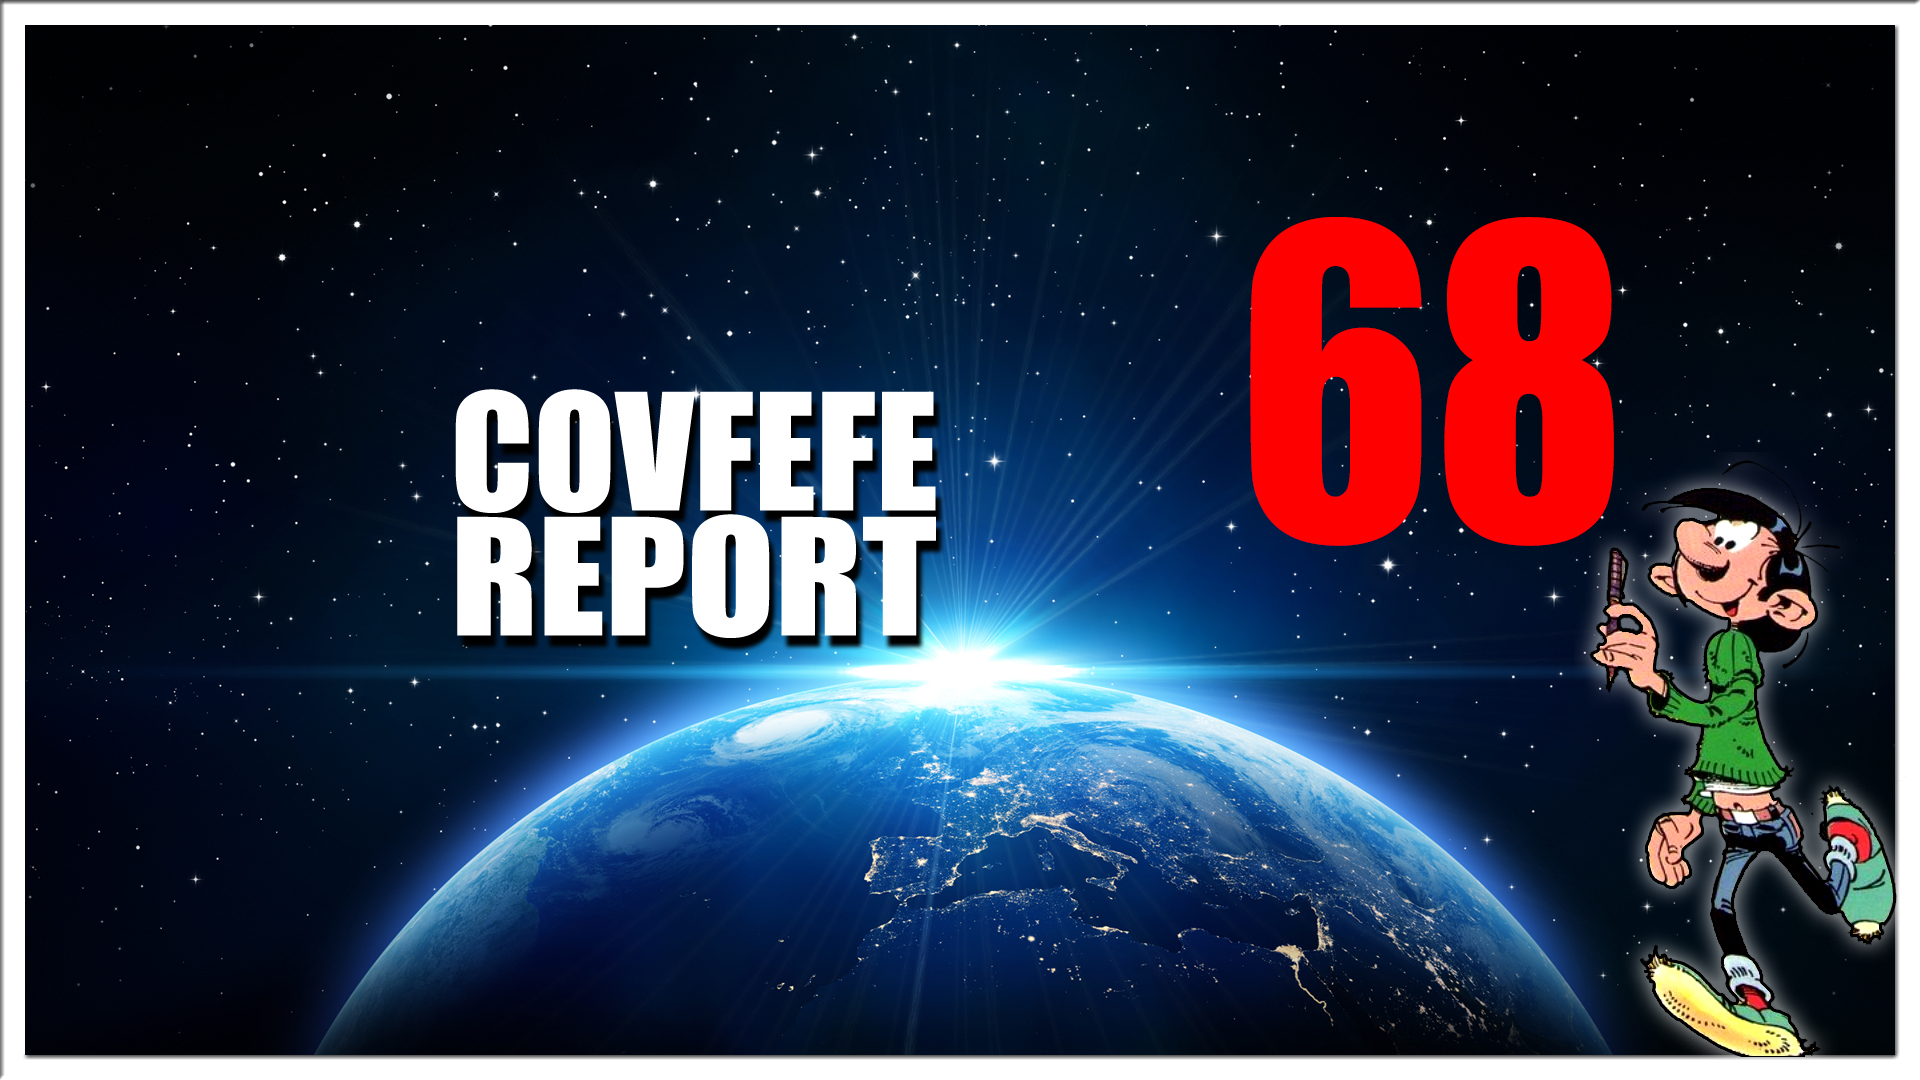 Covfefe Report 68. Qpost, AIVD helden, Happy Ouwejaarsdag